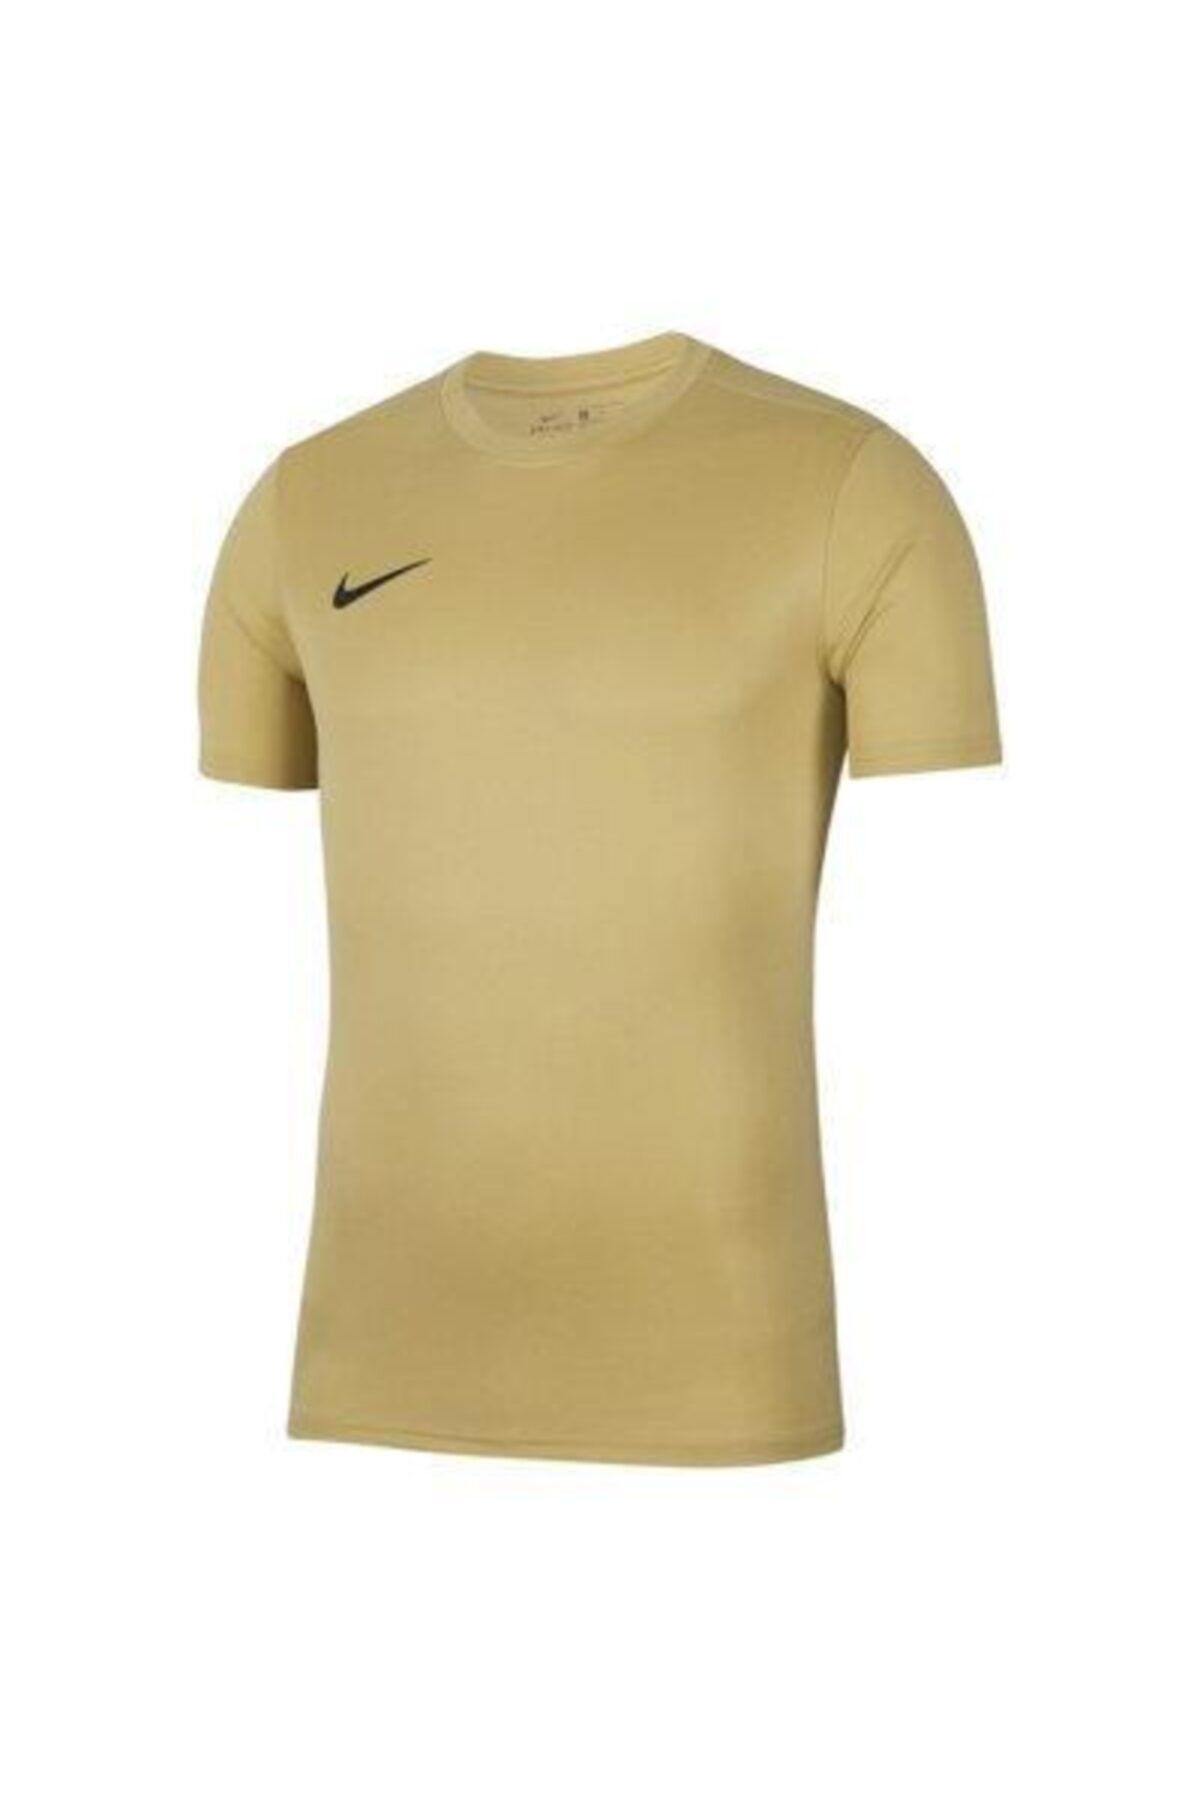 Nike Dry Park Vıı Erkek T-shirt Bv6708